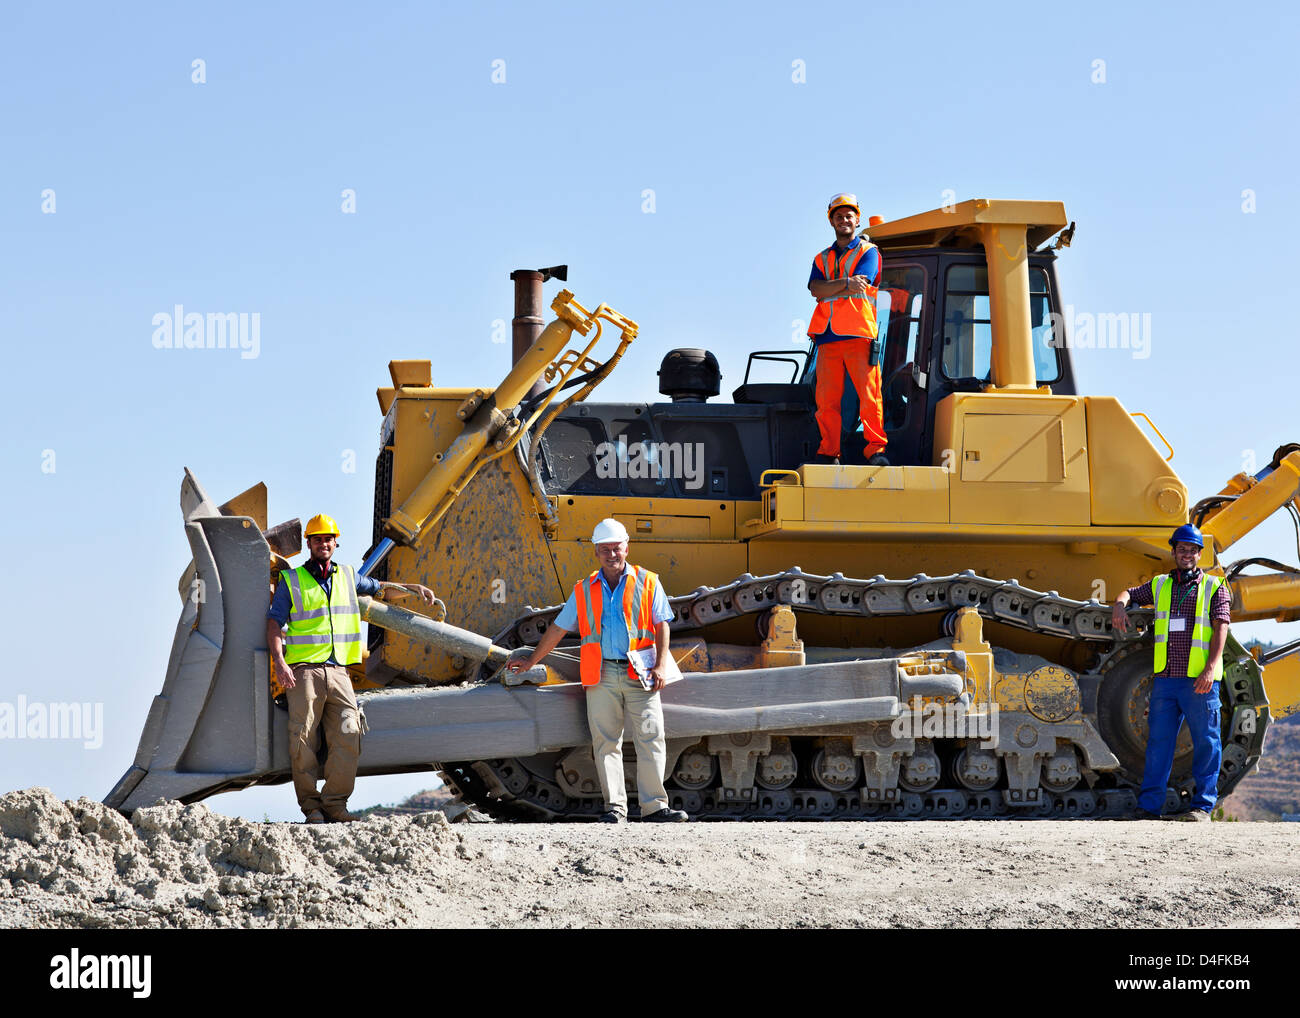 Les travailleurs sur bulldozer smiling in quarry Banque D'Images